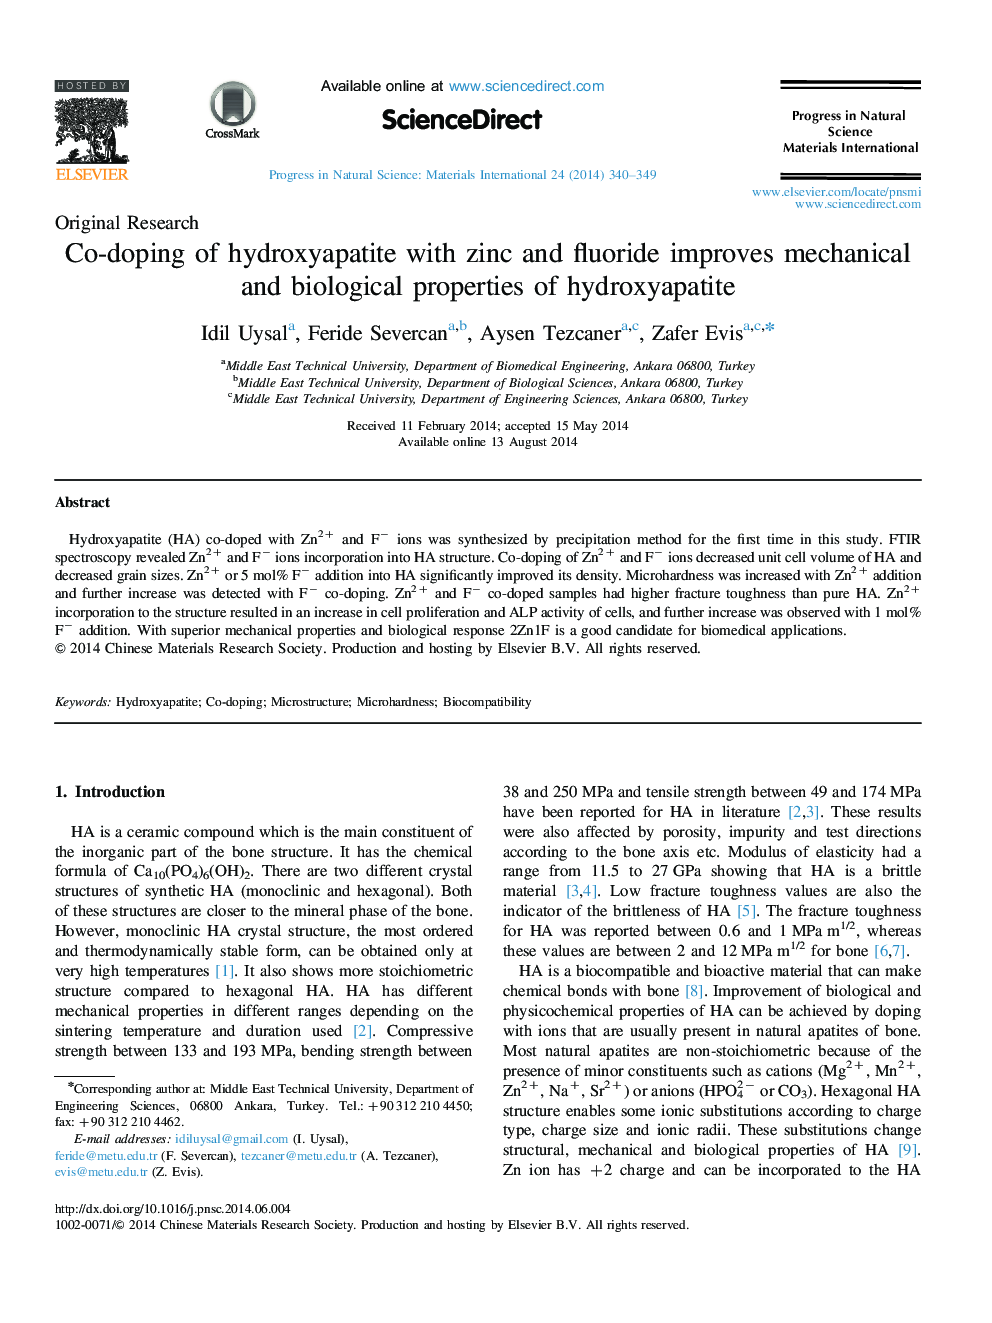 دوپینگ هیدروکسی آپاتیت با روی و فلوراید خواص مکانیکی و بیولوژیکی هیدروکسی آپاتیت را بهبود می بخشد 